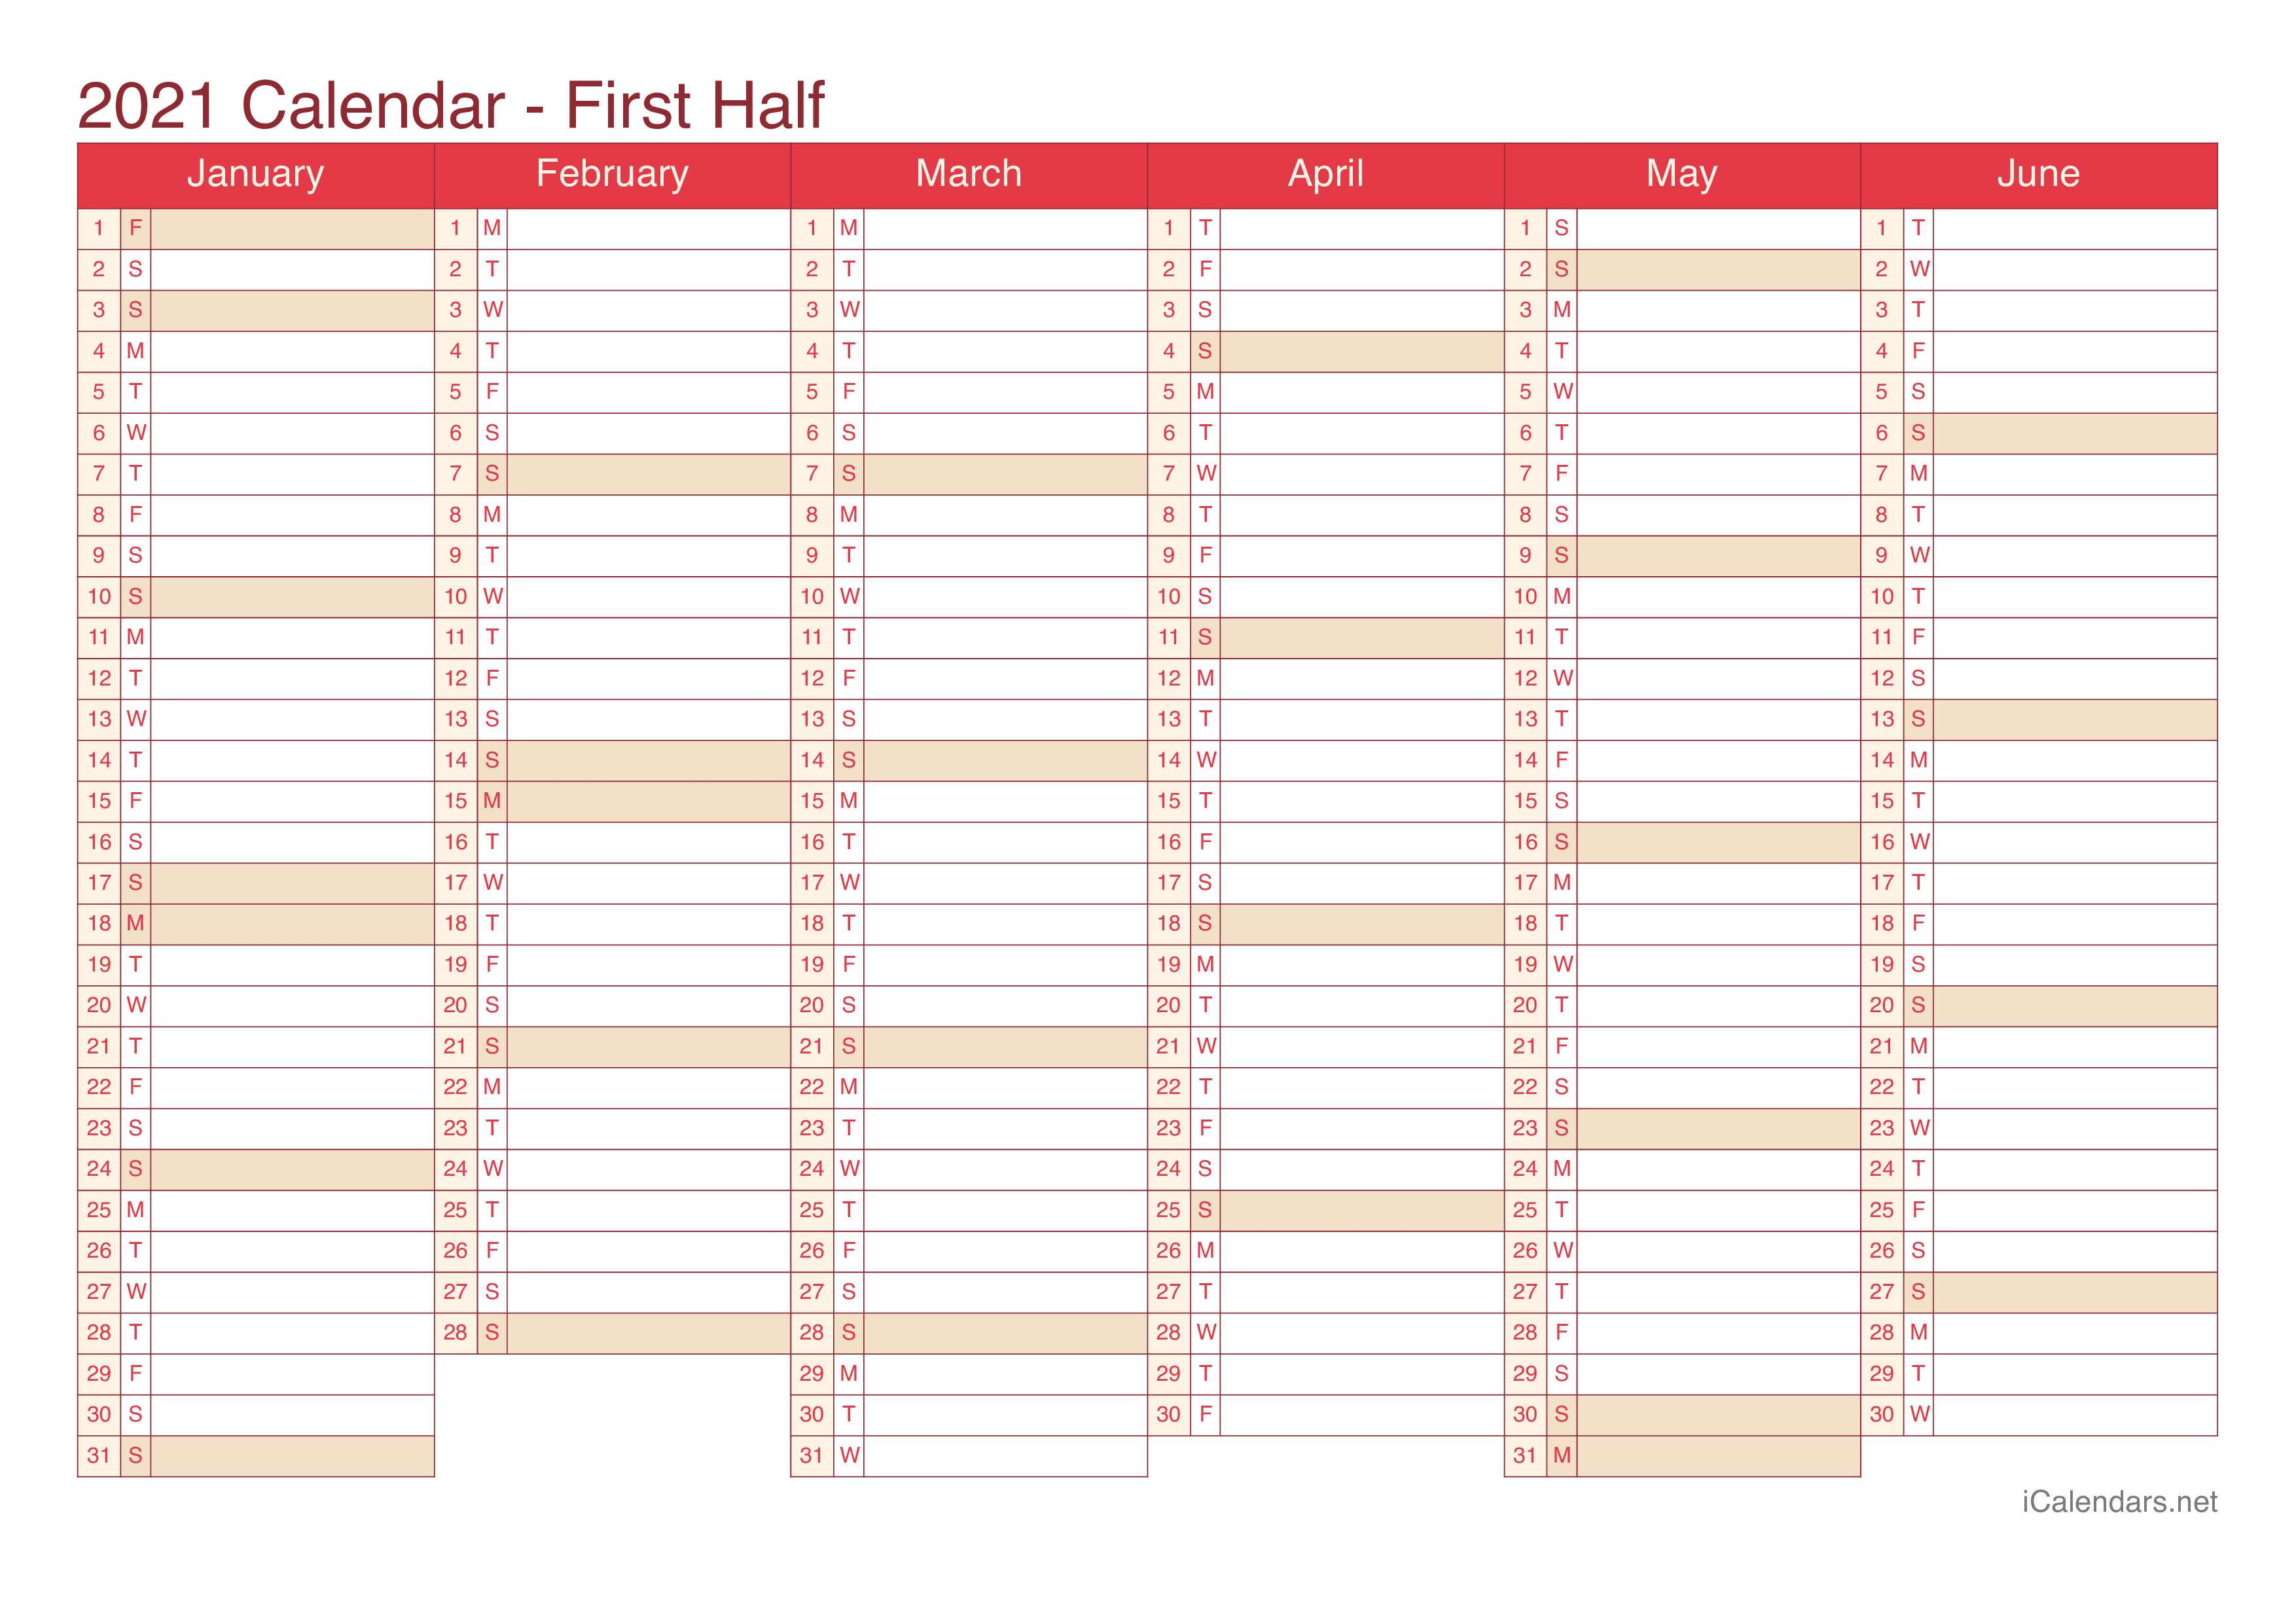 E3 2021 Calendar 2021 Printable Calendar   PDF or Excel   icalendars.net